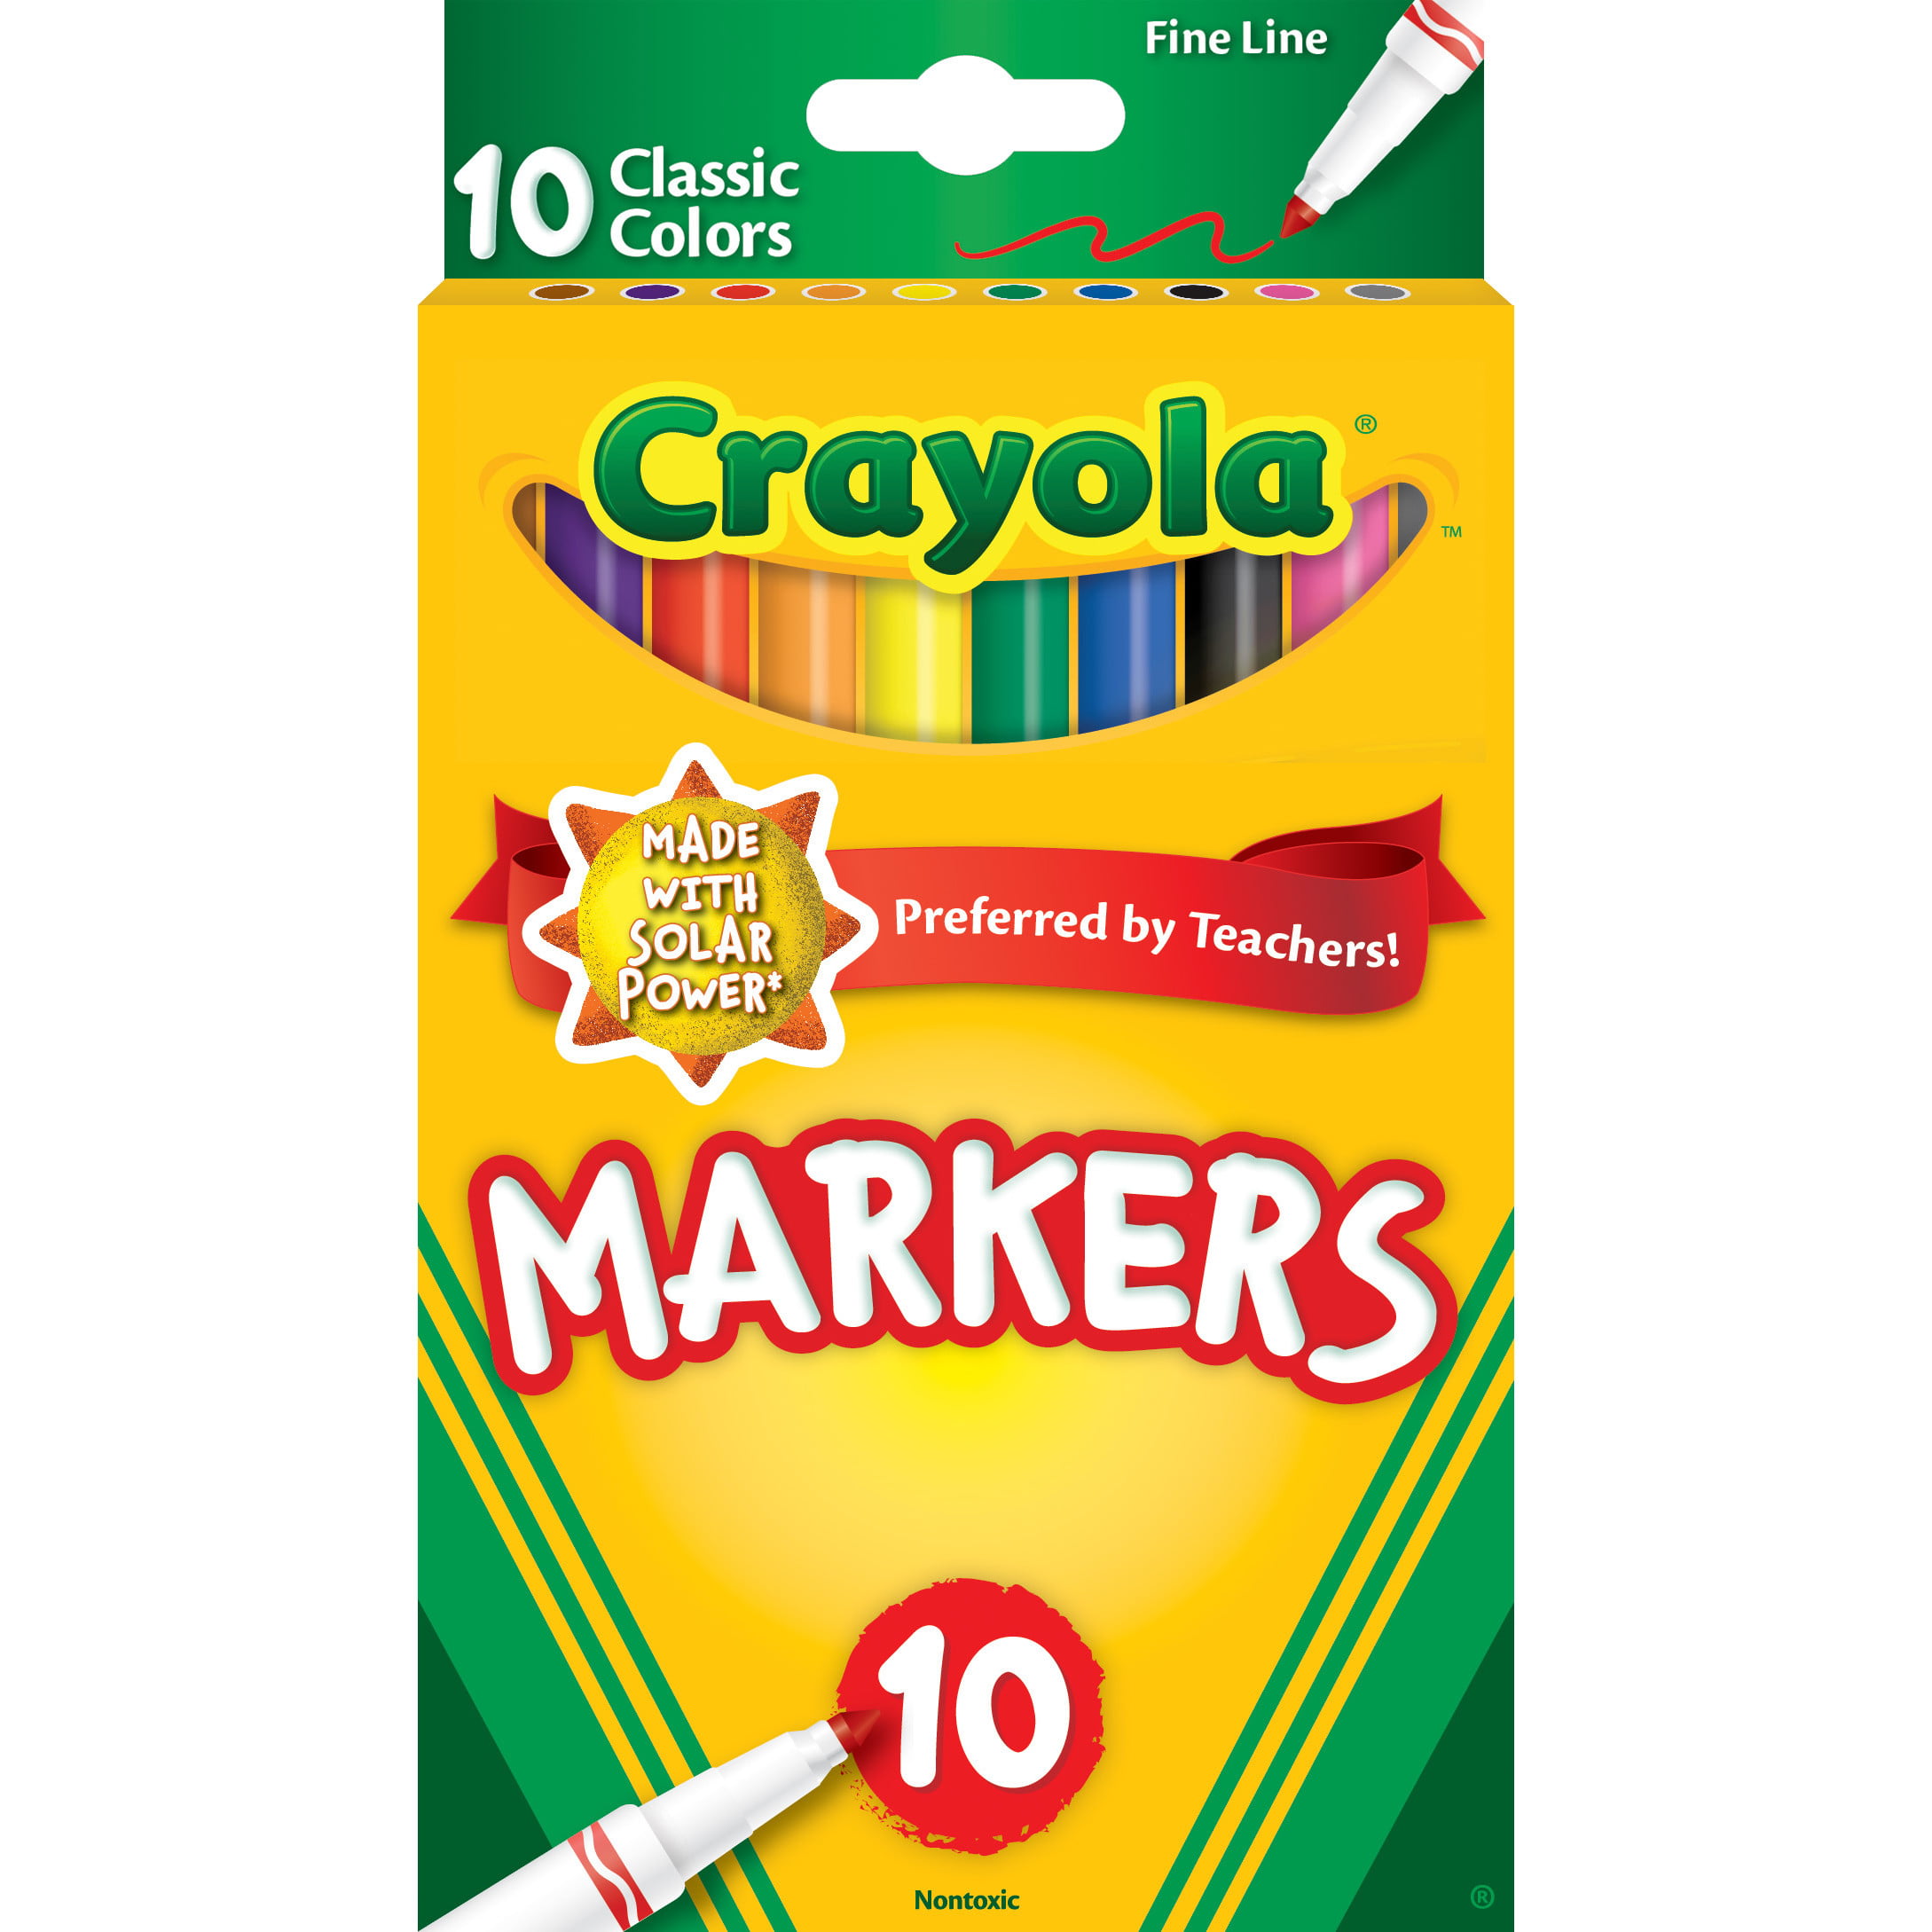 Crayola Super Tip Washable Marker Set, School Supplies, 20 Ct